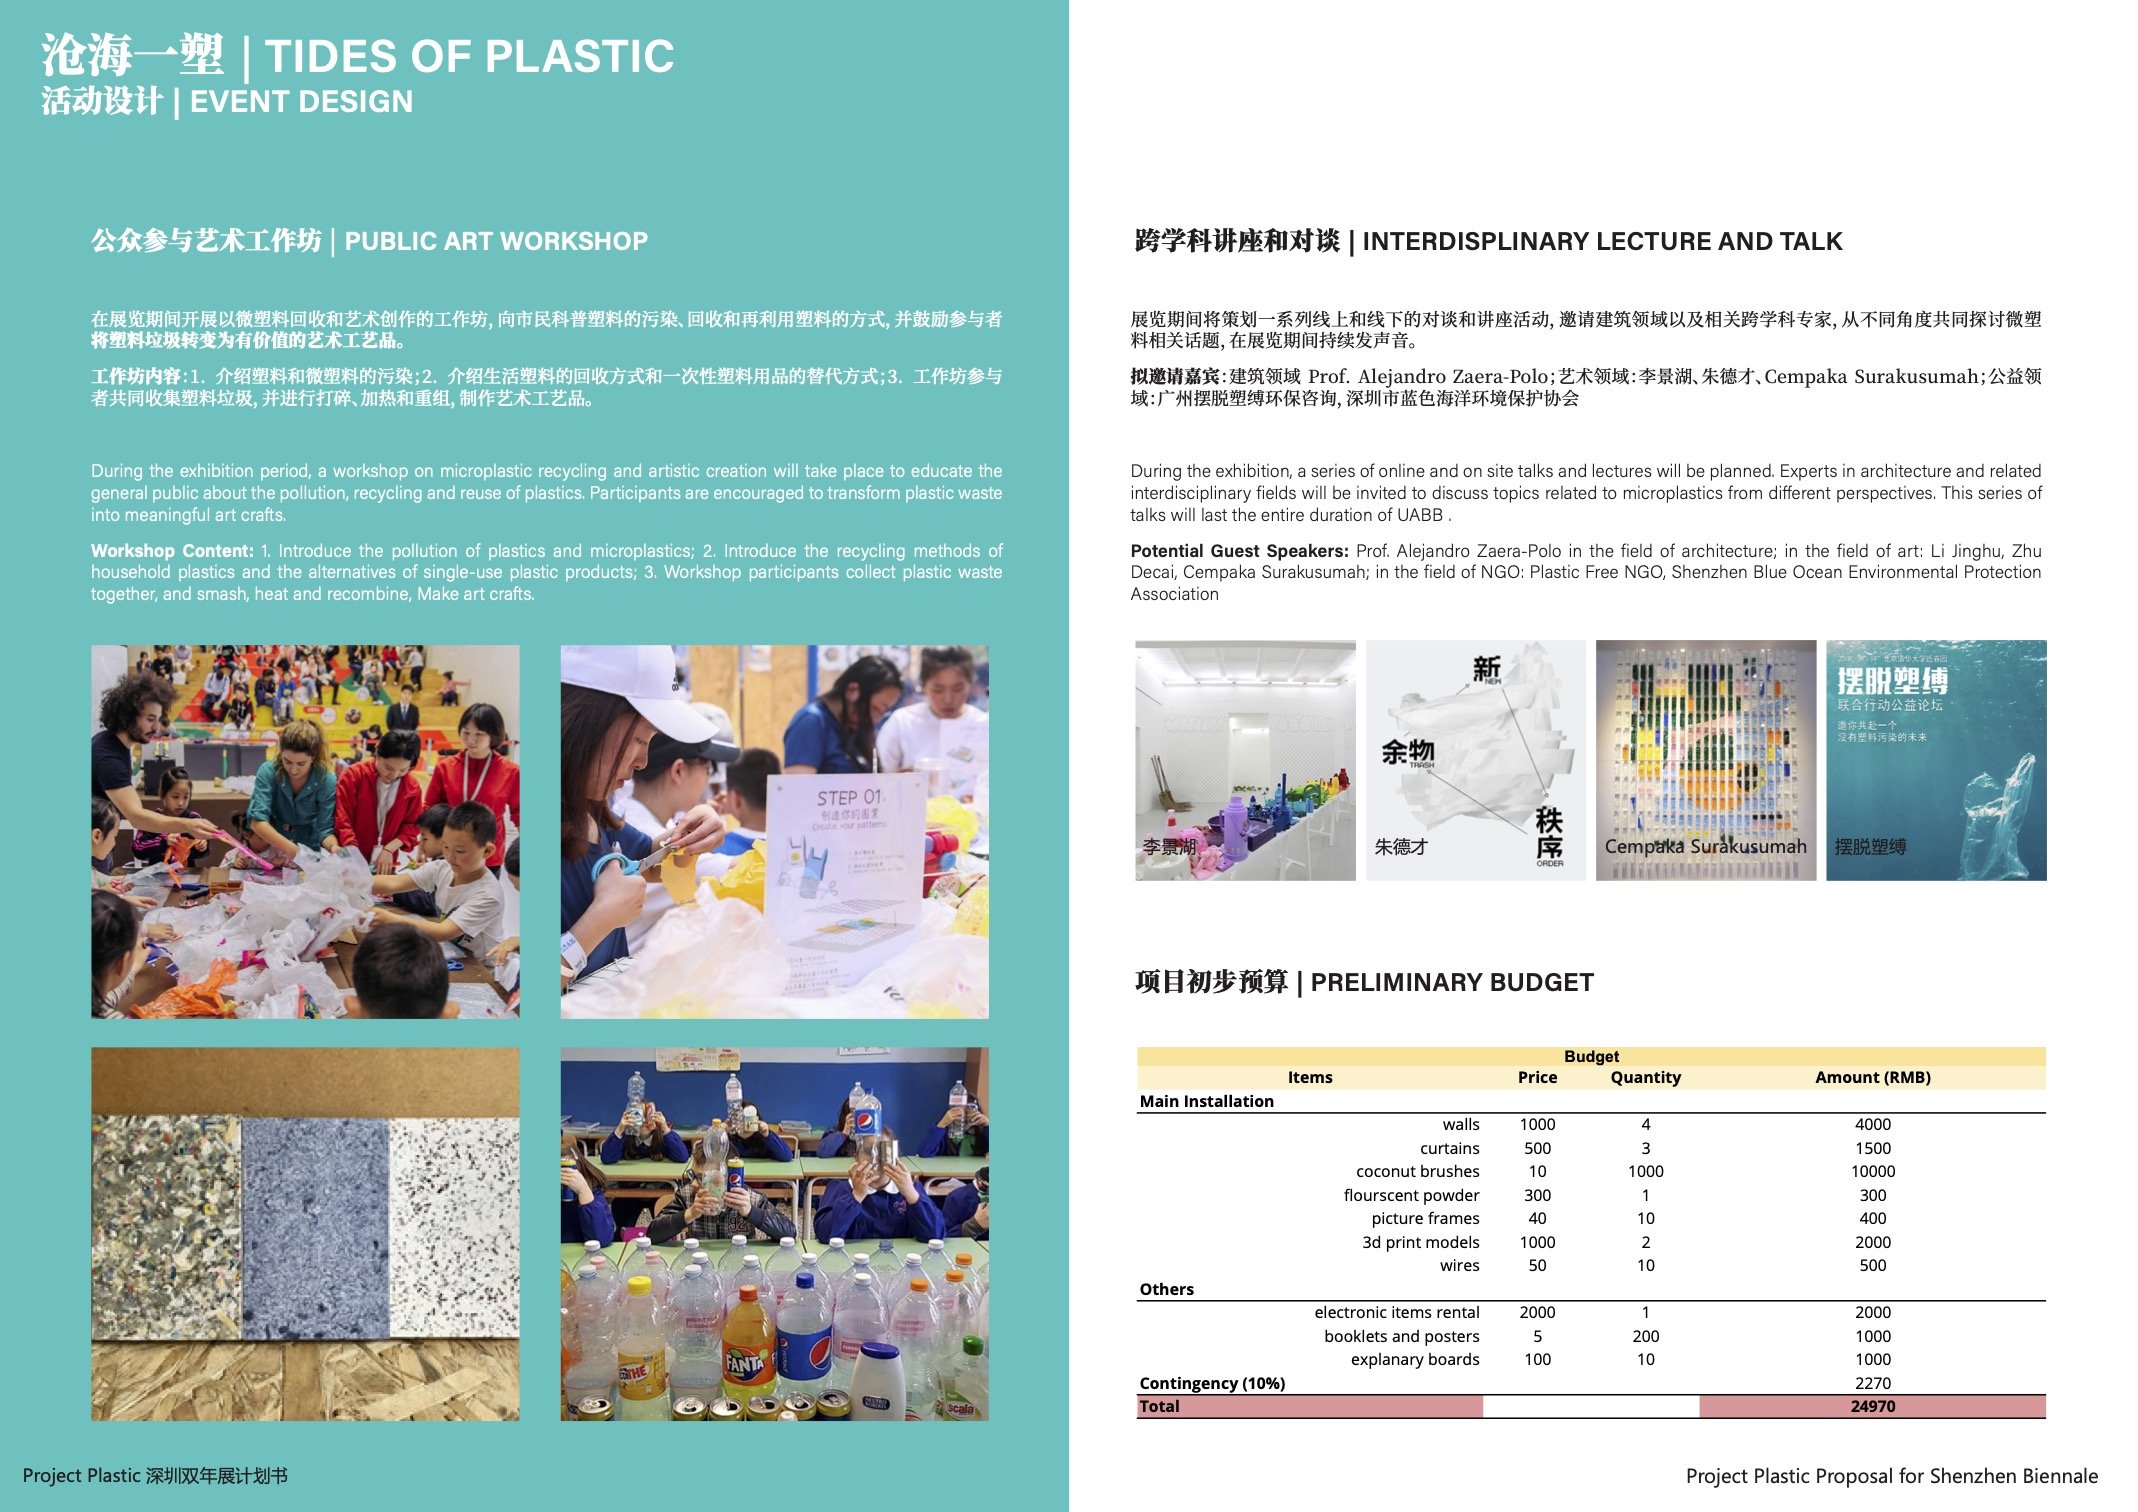 [FINAL] Project Plastic_Shenzhen Biennale.jpg